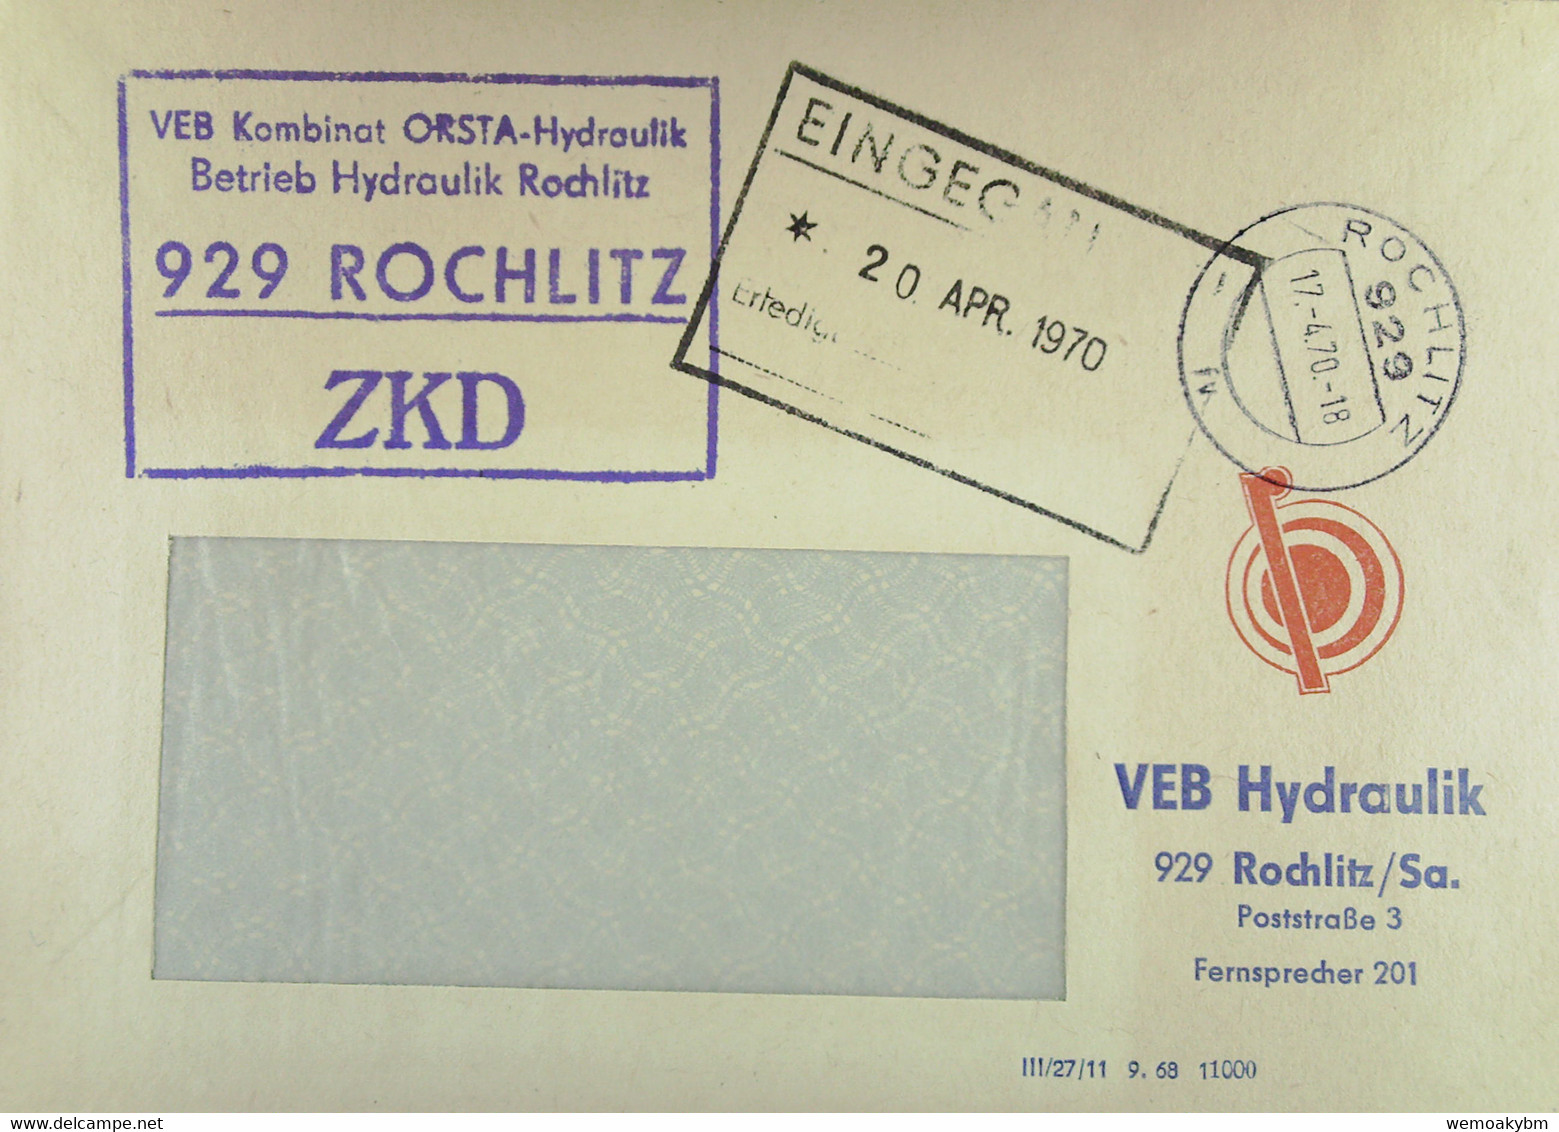 Fern-Brief Mit ZKD-Kastenstempel "VEB Kombinat OSTRA-Hydraulik Betrieb Hydraulik 929 ROCHLITZ" Vom 17.4.70 Nach Dresden - Cartas & Documentos